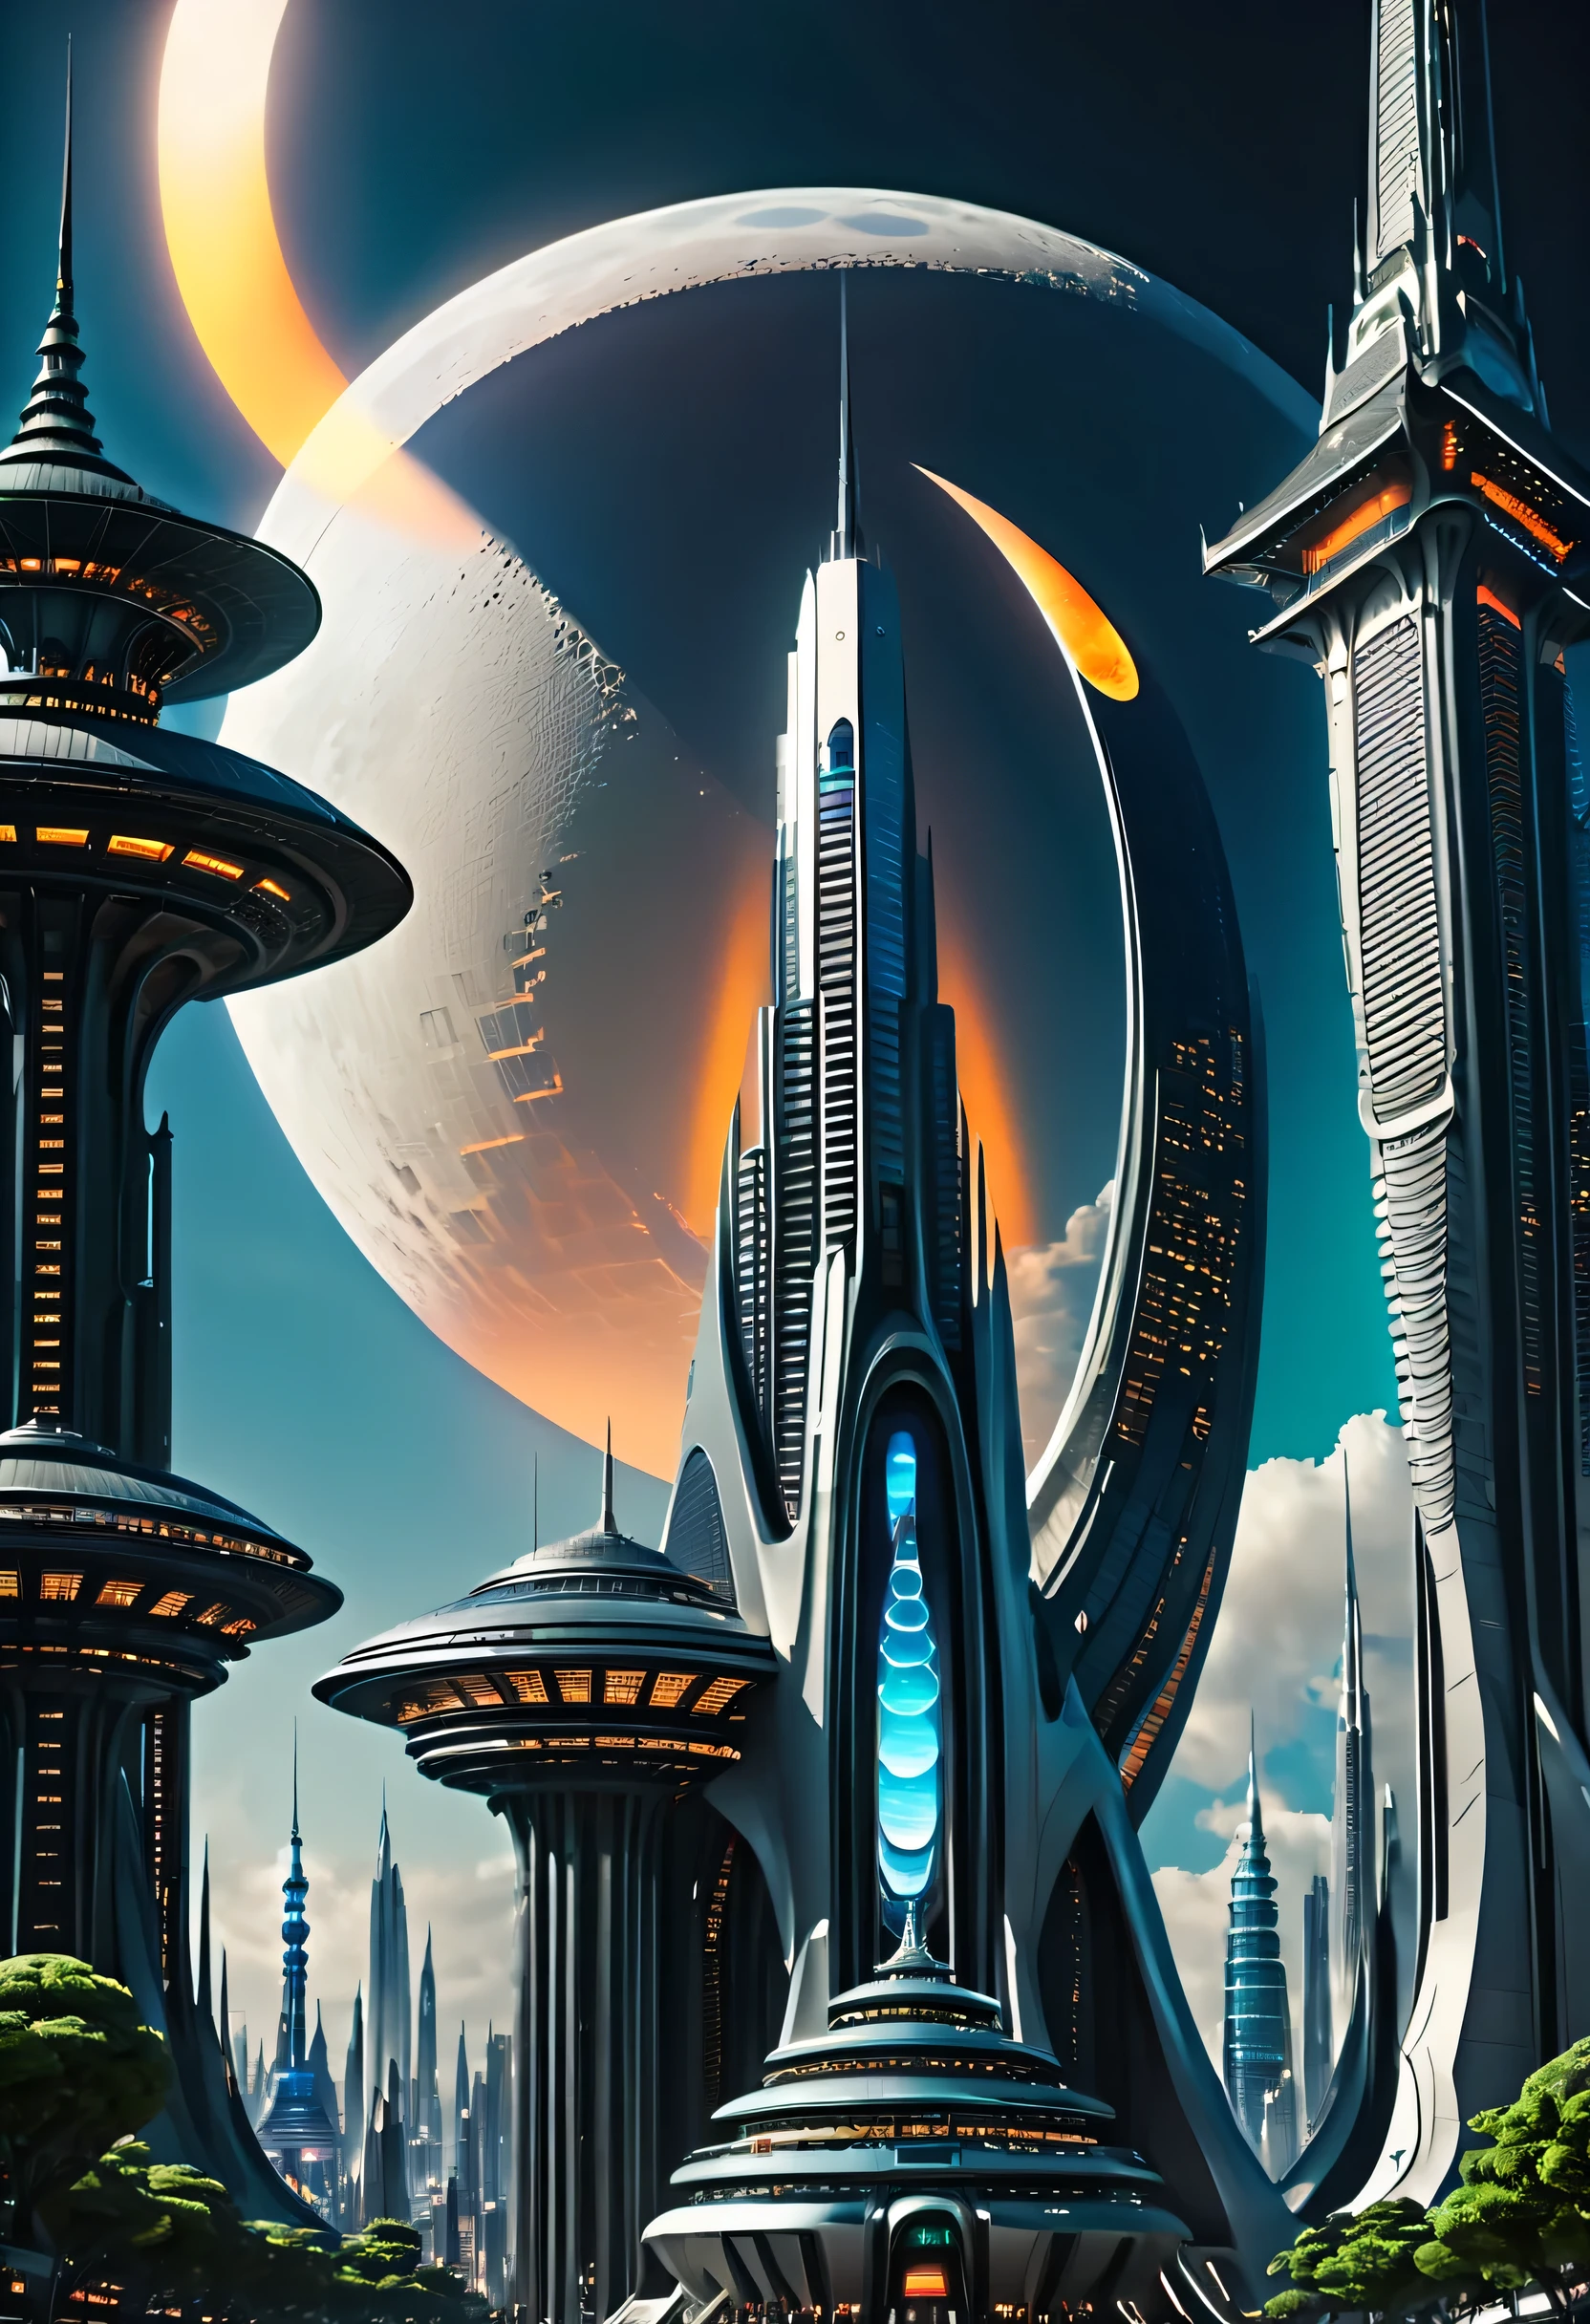 未来的な建築物と空に浮かぶ月のある未来都市, 巨大な未来的な寺院都市, beautiful 未来の都市, 未来的な設定, 未来的な宇宙港, 未来の谷, 異世界の未来都市, 未来的な宮殿, ファンタジーSF都市, 異星の都市, エイリアンの未来都市, SF都市, 未来の都市, 未来の異星都市, 未来のユートピア